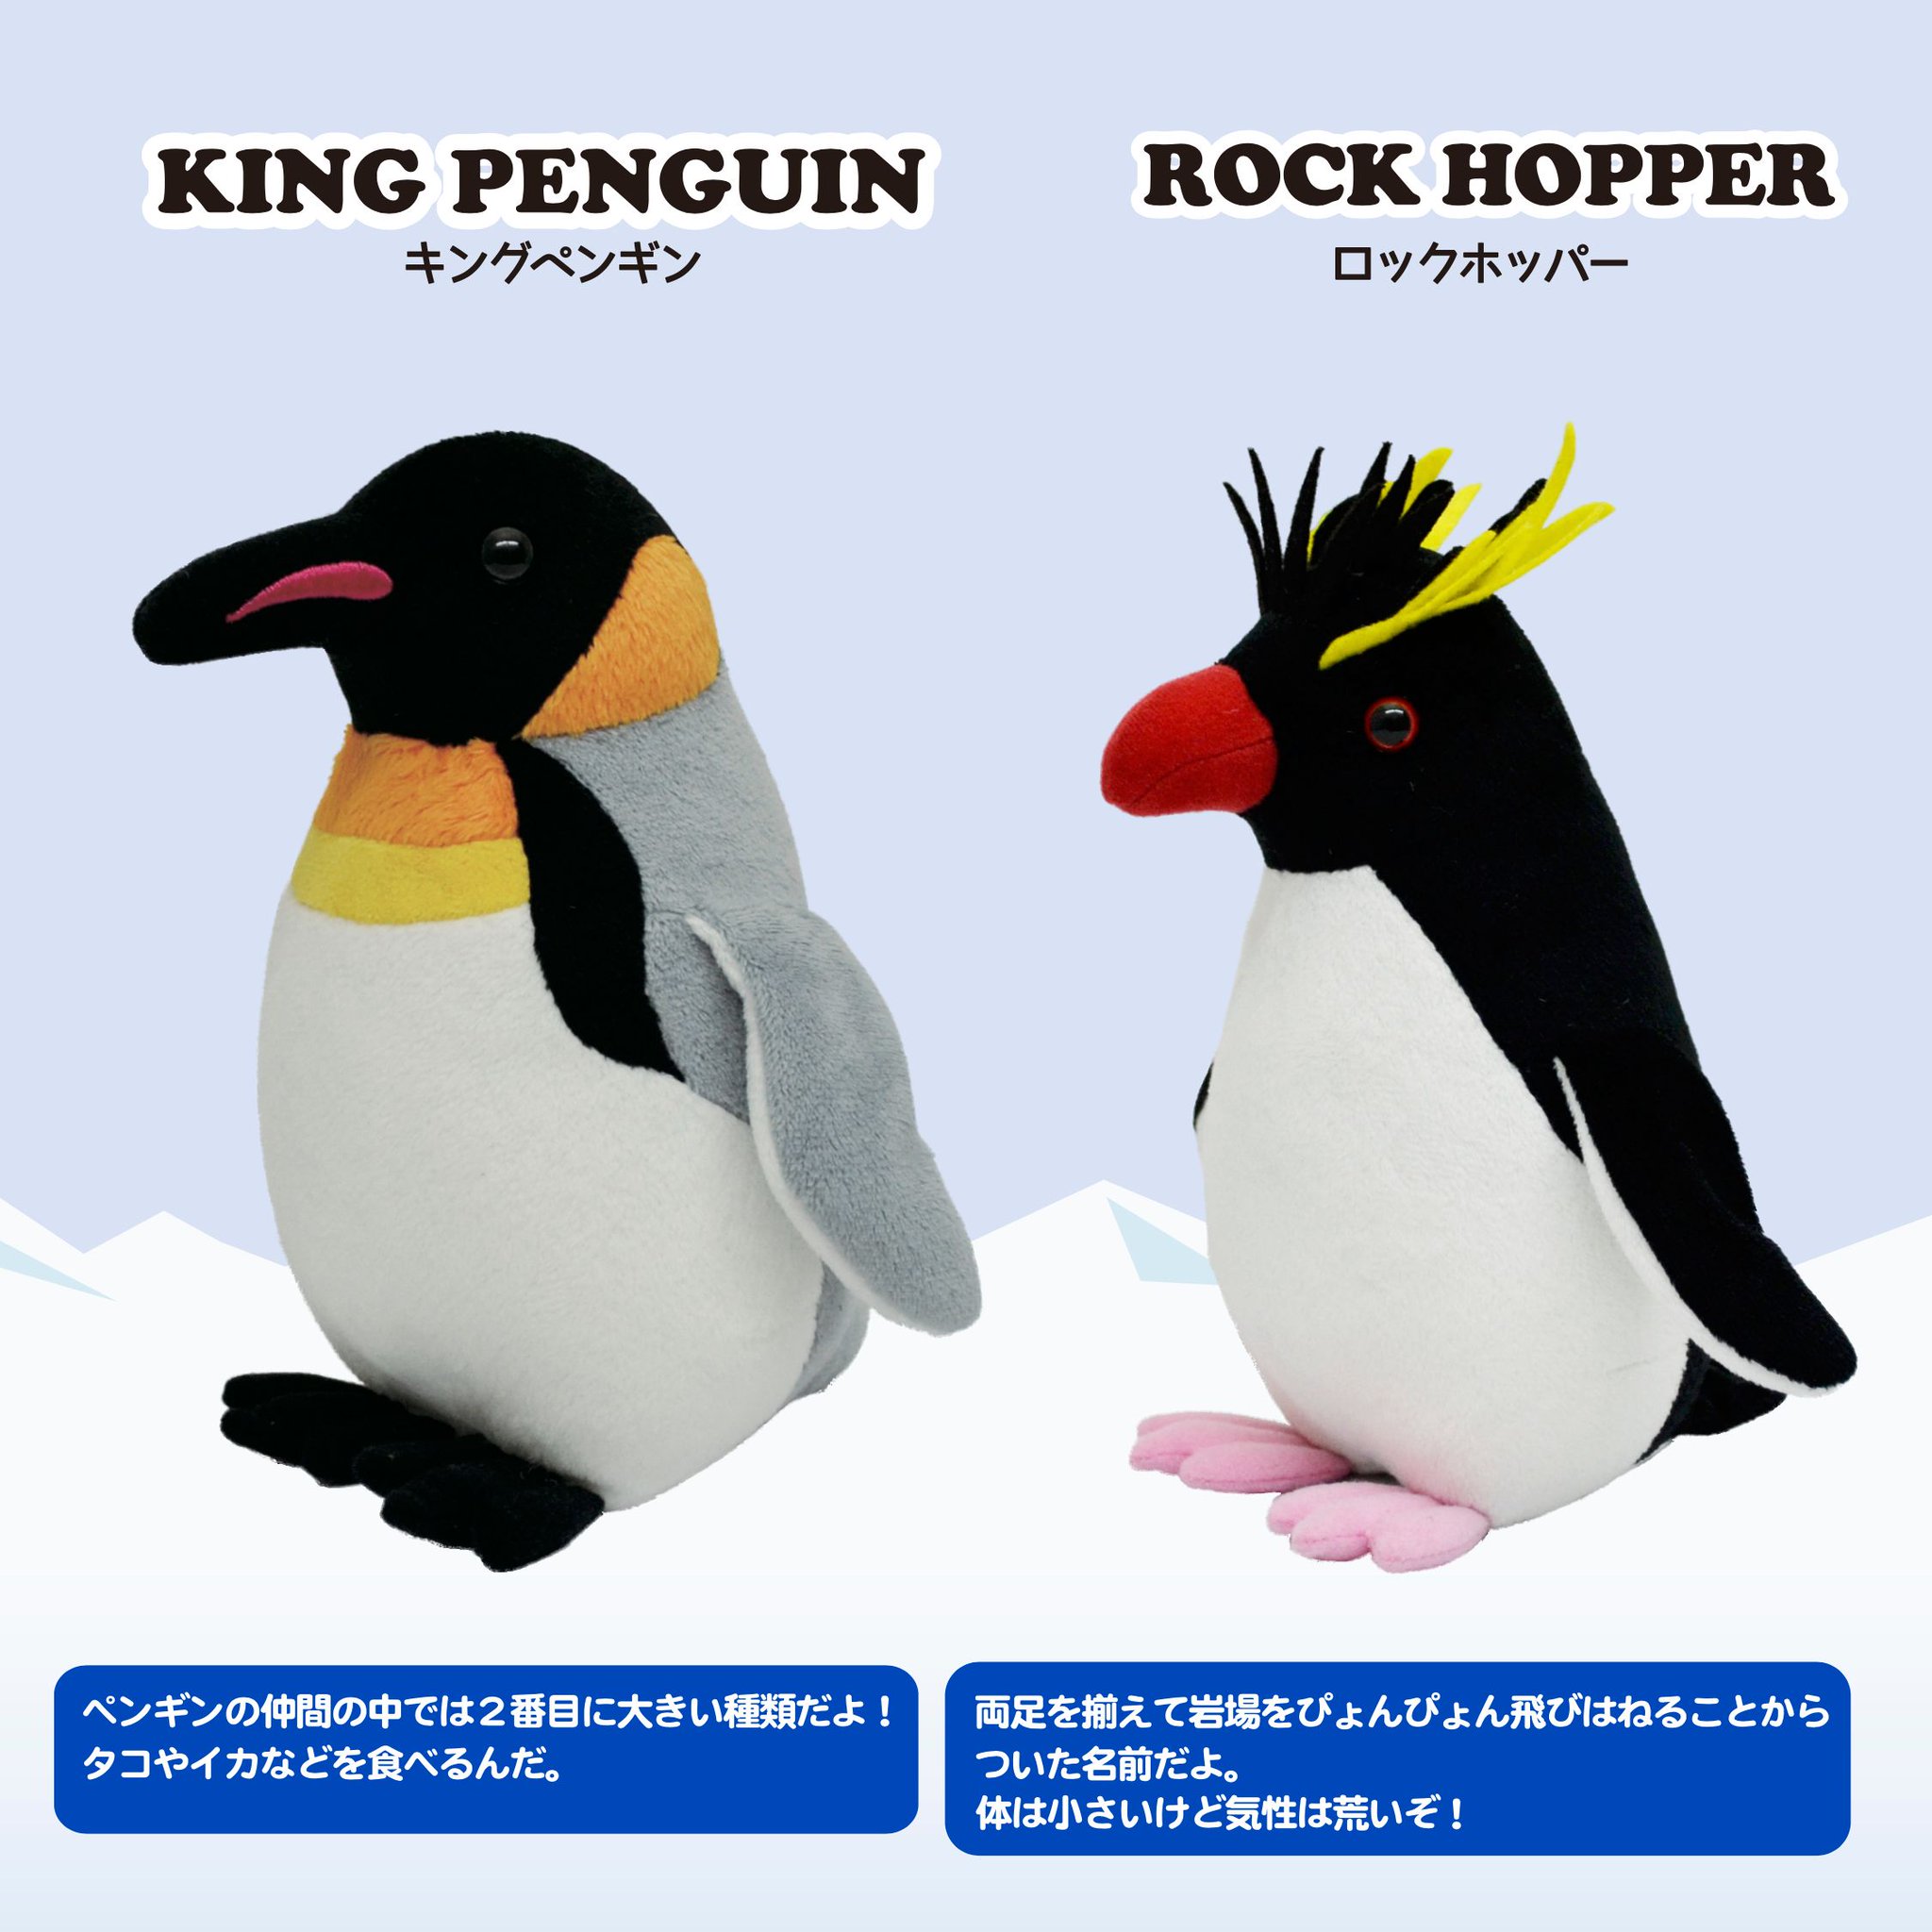 株式会社aqua公式 No Twitter リアルでかわいいキングペンギンとロックホッパーのぬいぐるみです ペンギンコレクションは全部で6種類 ぬいぐるみ ペンギン 八景島シーパラダイス シーパラ 水族館 いいね かわいい